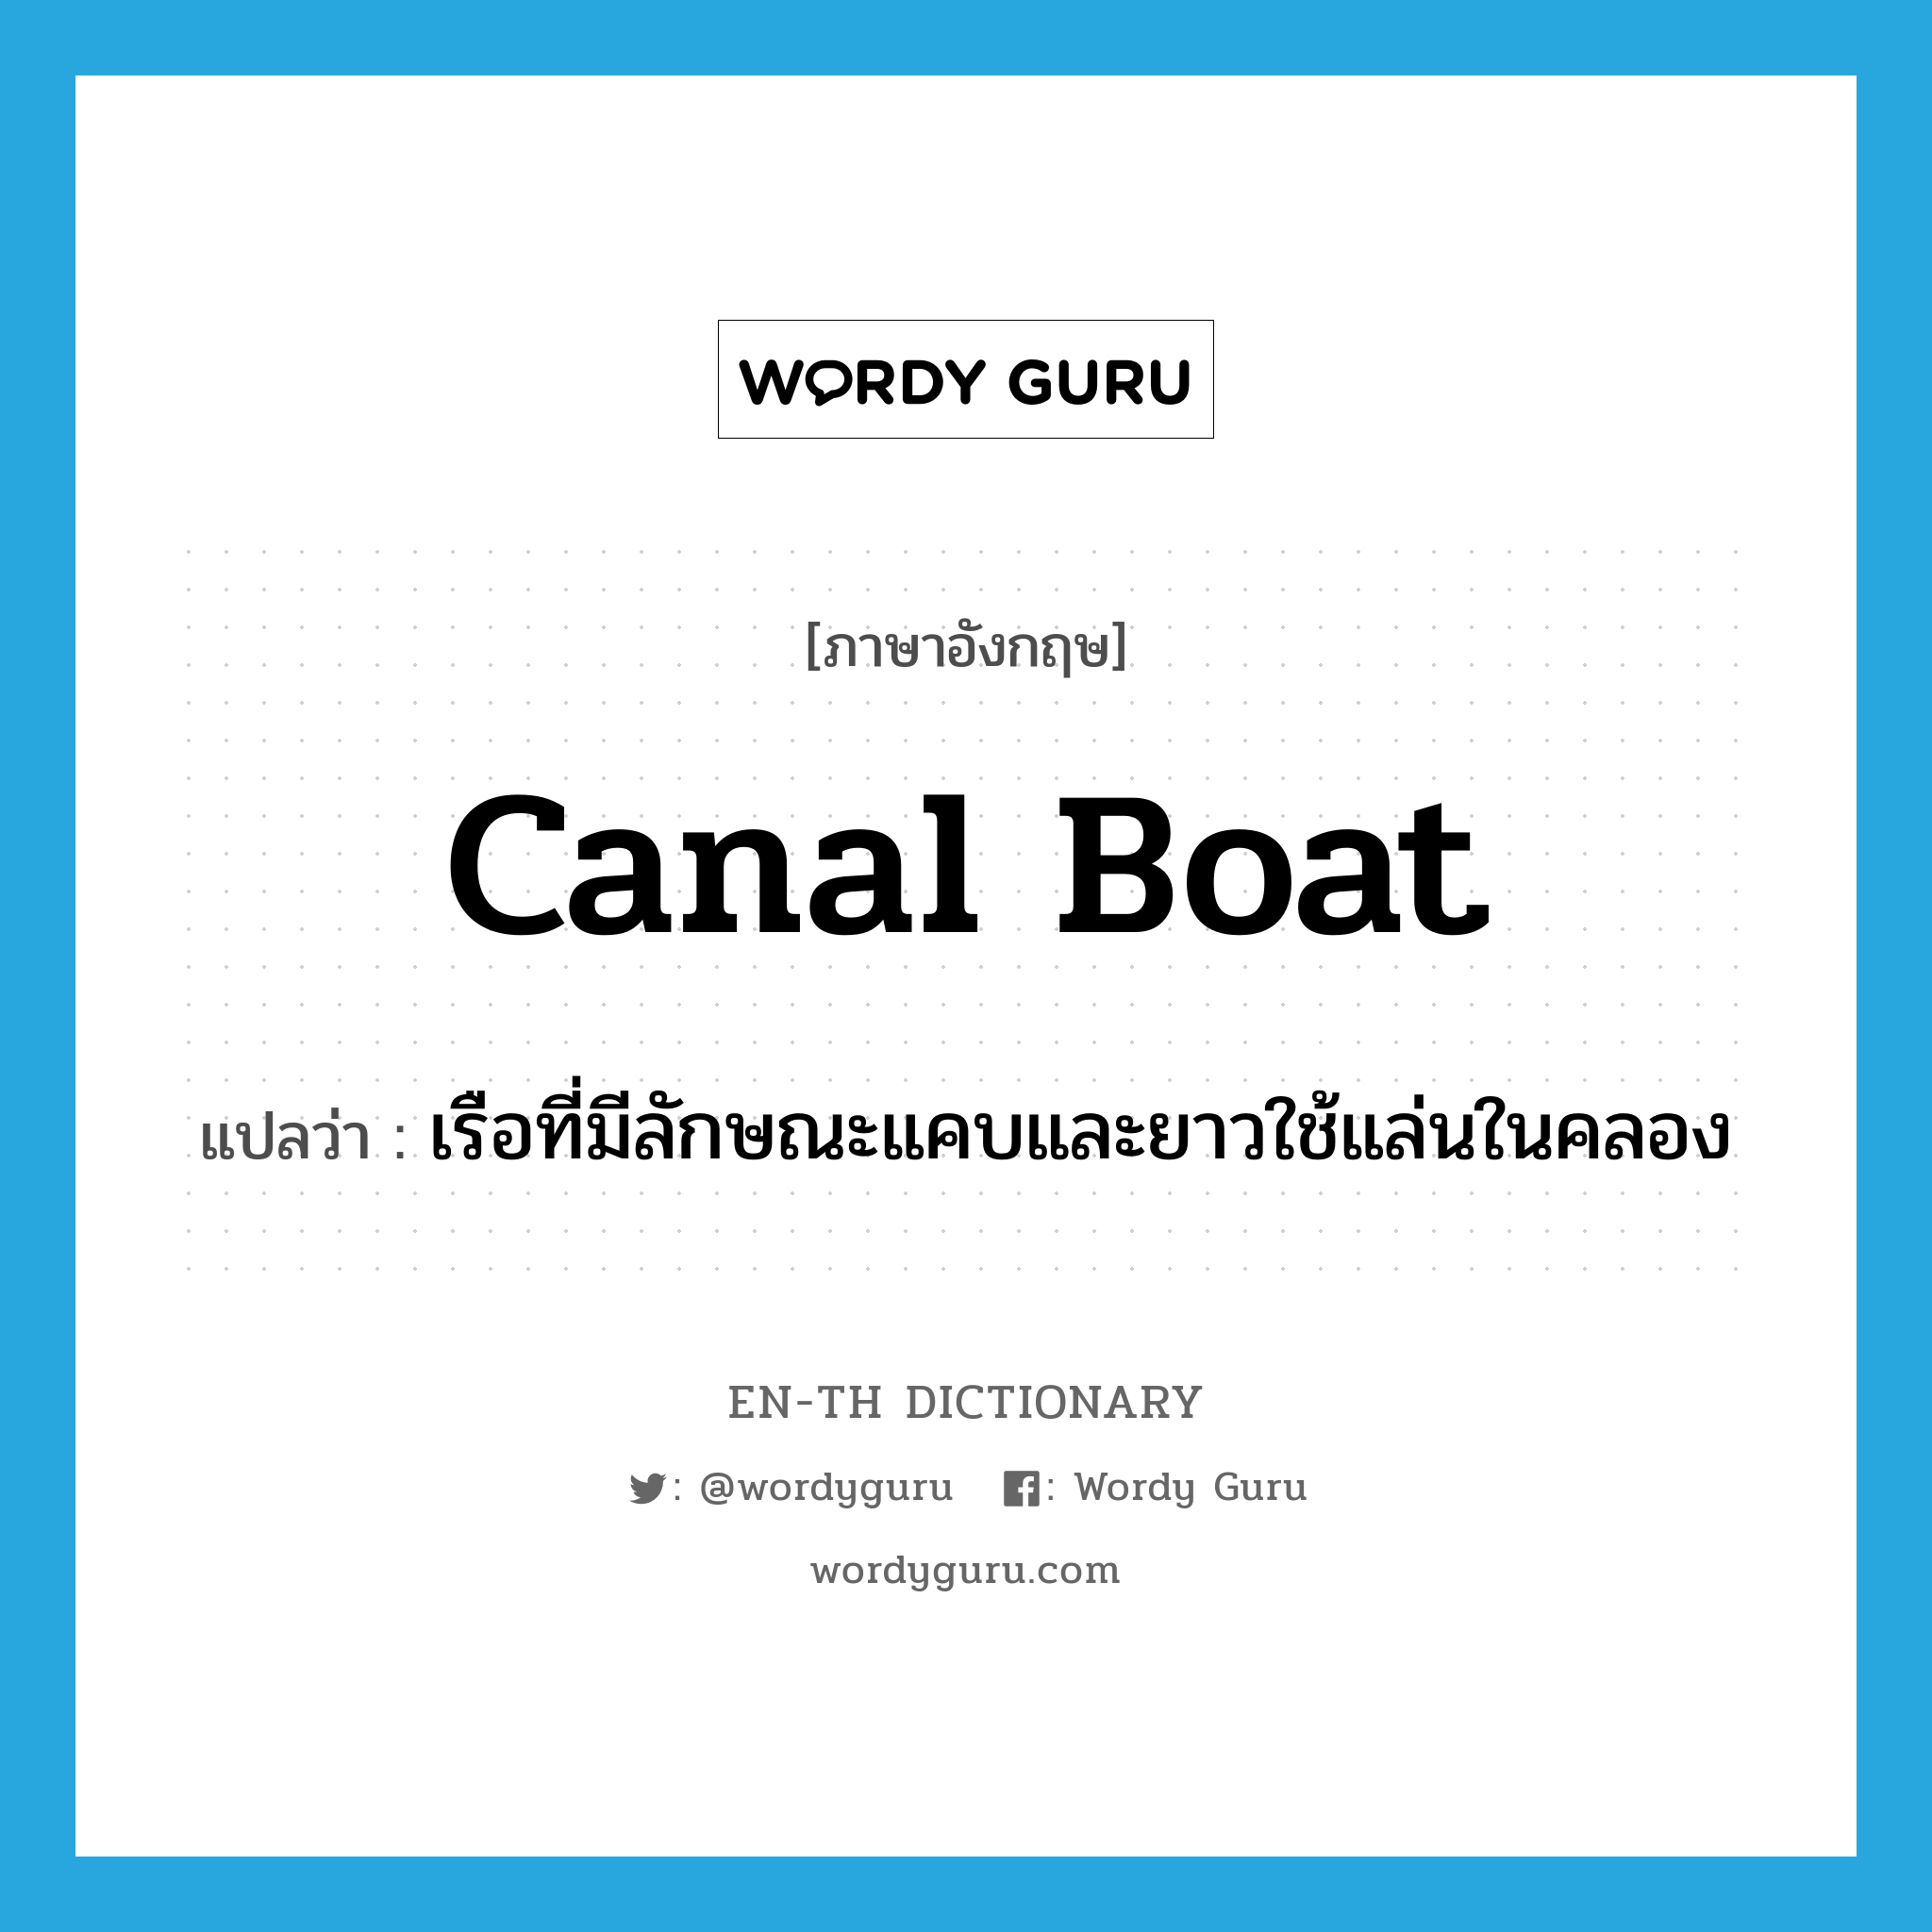 canal boat แปลว่า?, คำศัพท์ภาษาอังกฤษ canal boat แปลว่า เรือที่มีลักษณะแคบและยาวใช้แล่นในคลอง ประเภท N หมวด N